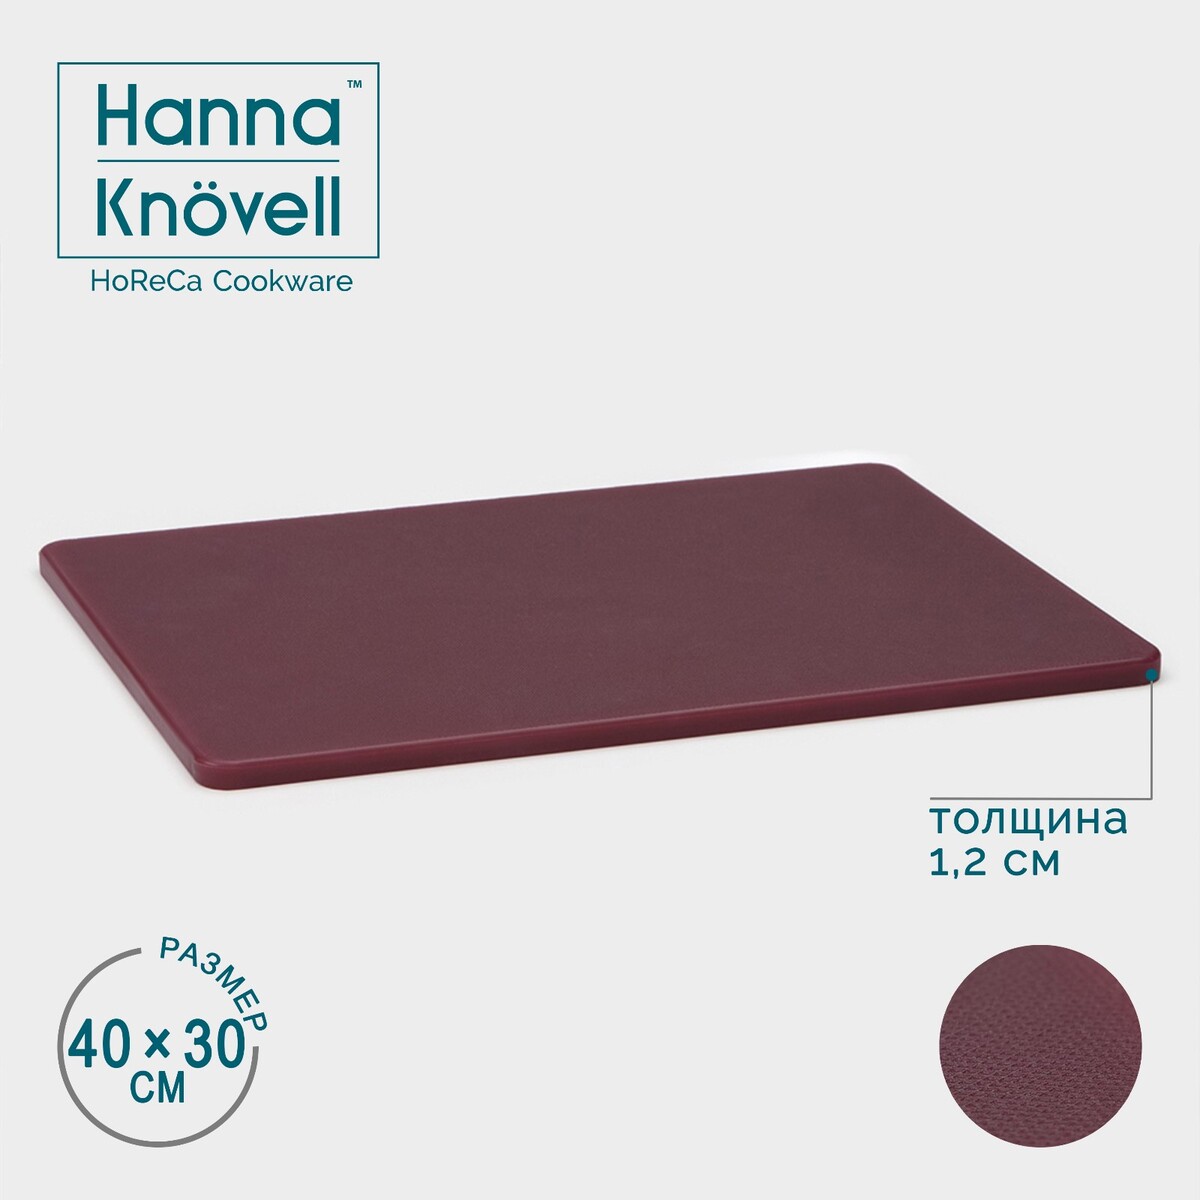 фото Доска профессиональная разделочная, 40×30 см, толщина 1,2 см, цвет бордовый hanna knövell